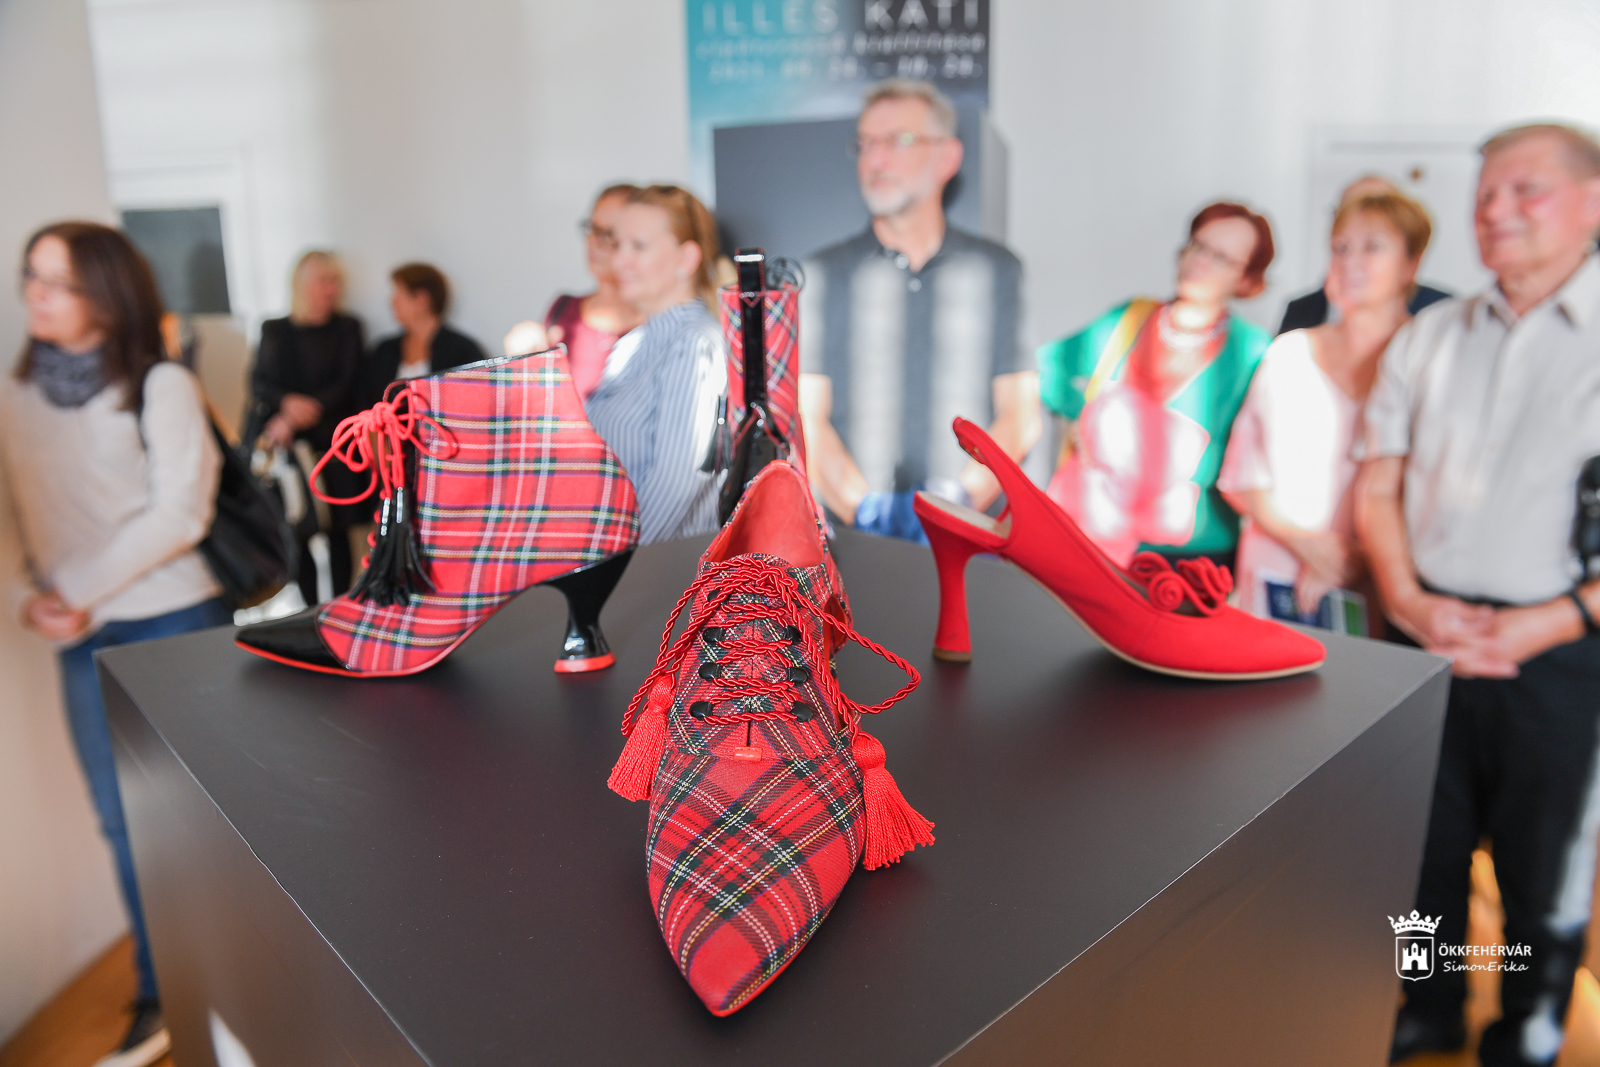 Finisszázs a cipőkiállításban - rendhagyó bontással zárul Illés Kati cipőtervező kiállítása